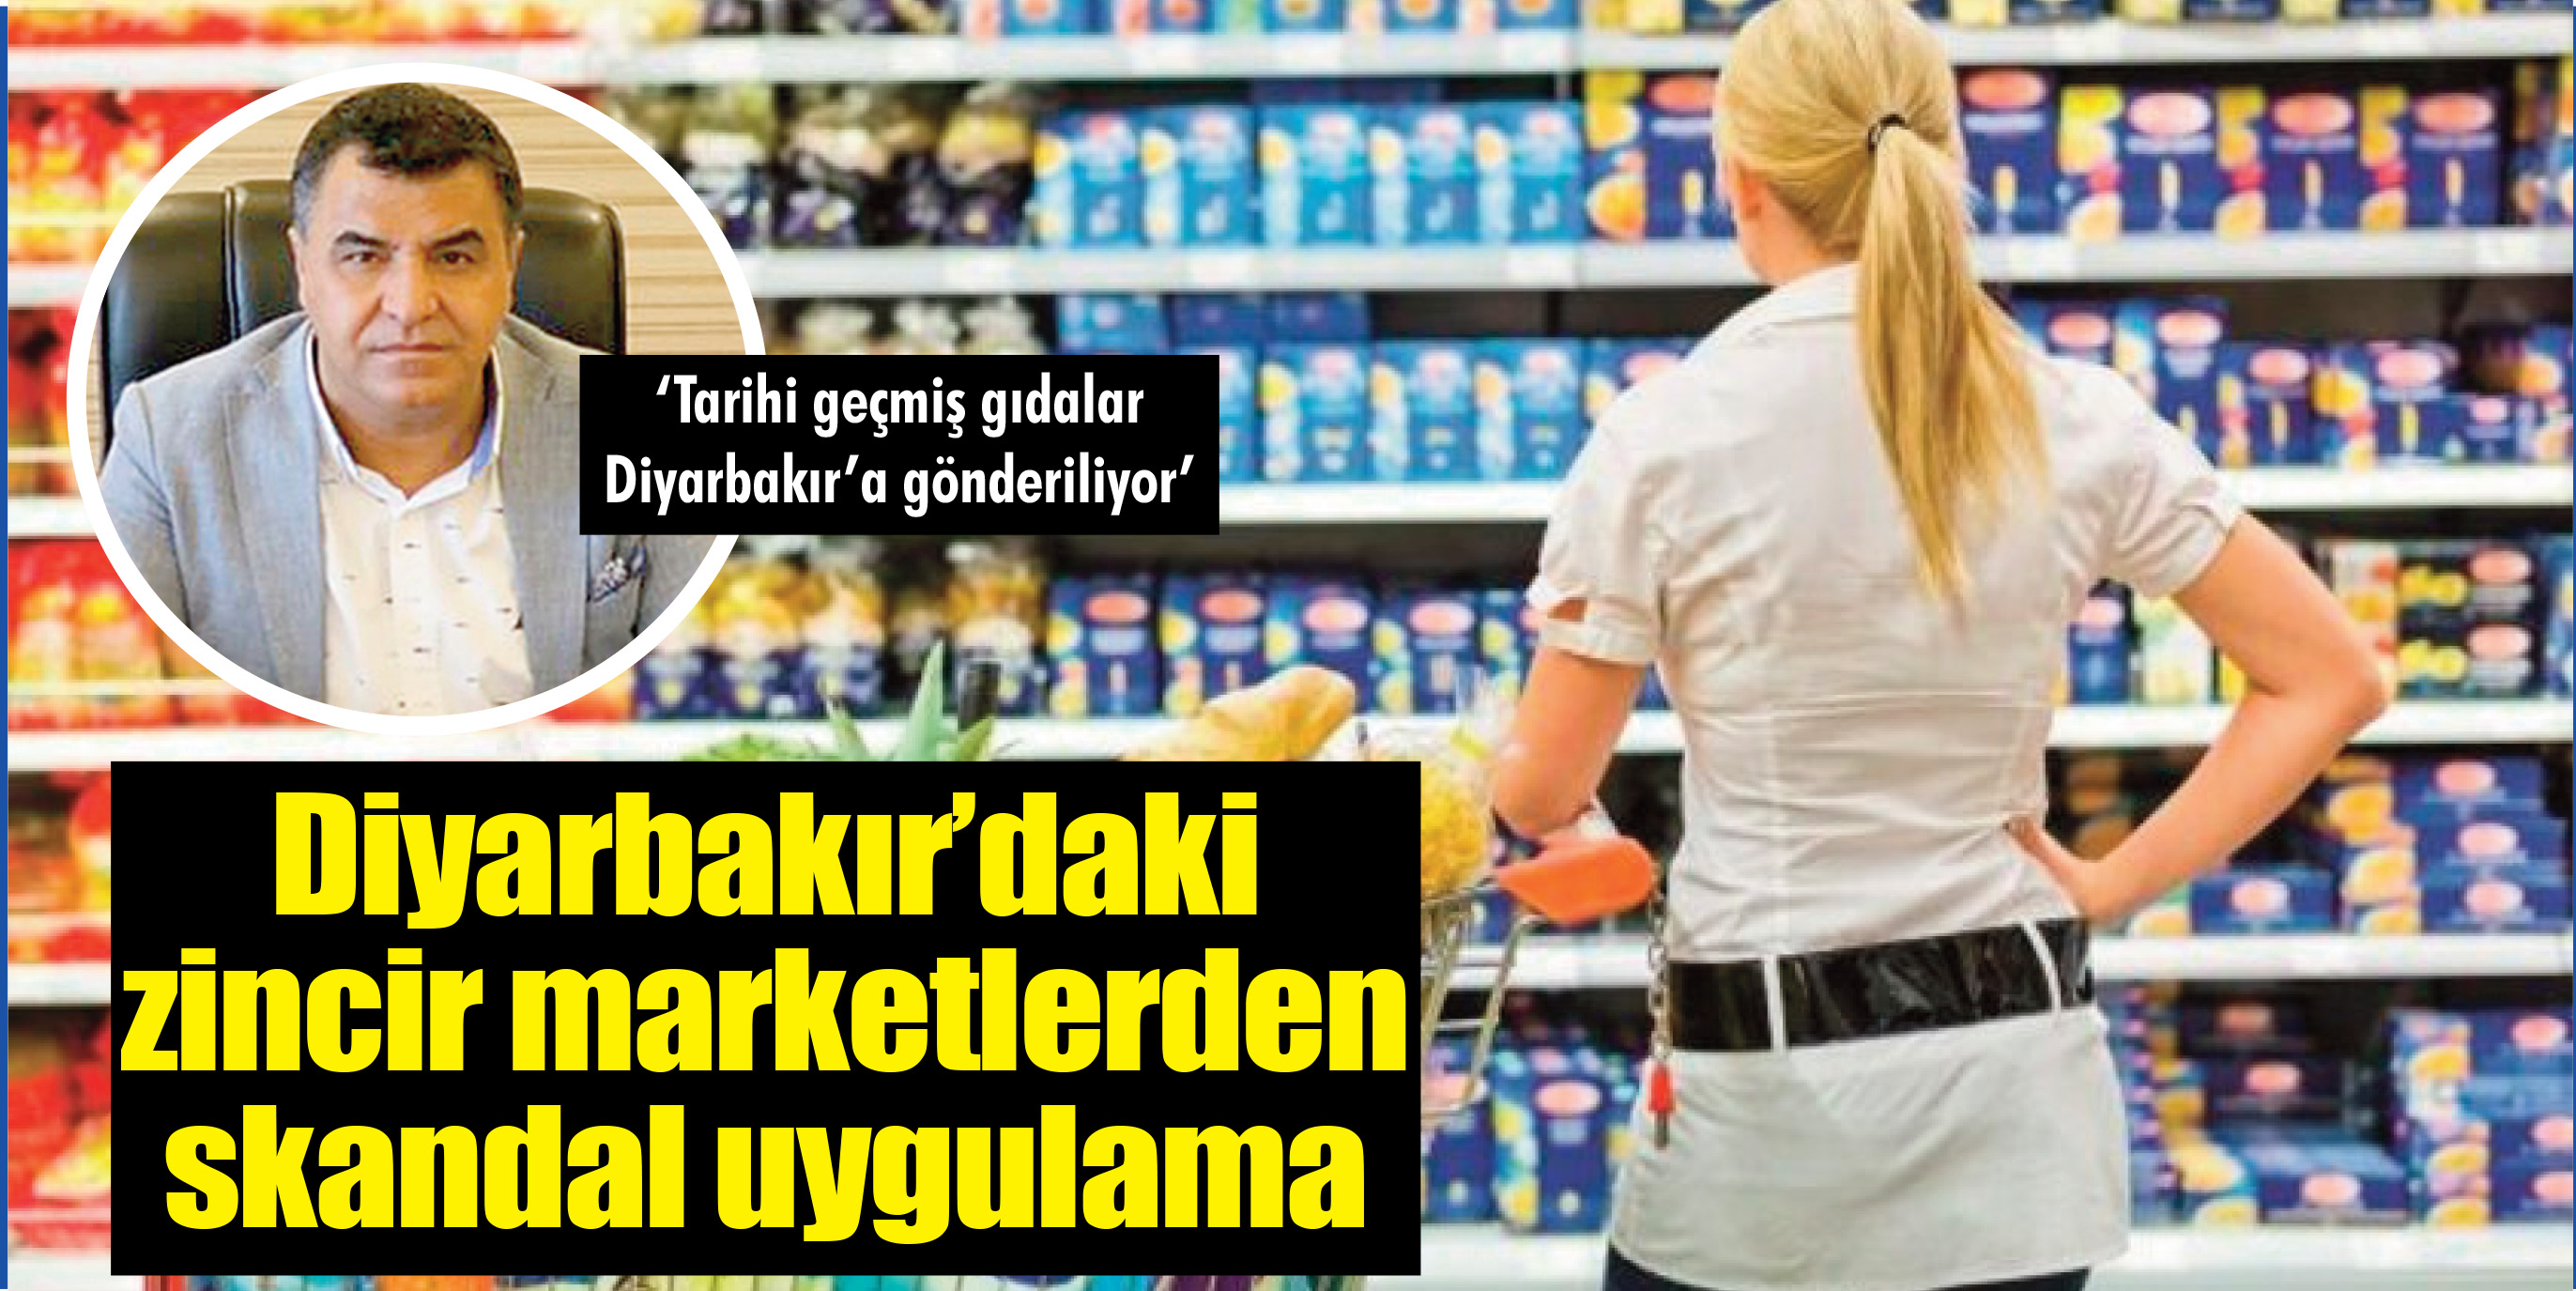 Diyarbakır’daki zincir marketlerden skandal uygulama